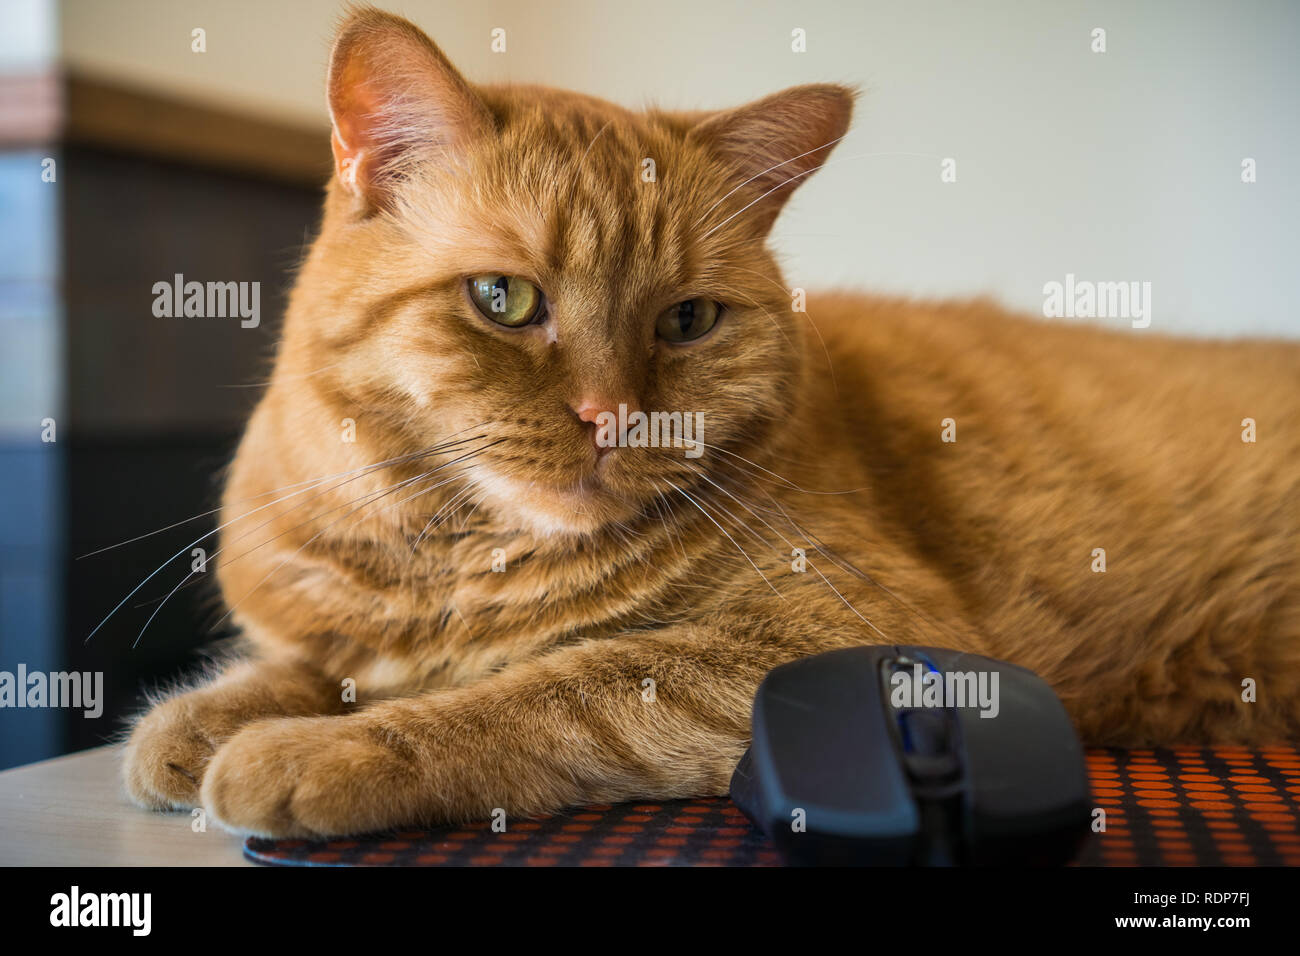 Close up of cat orange assis près d'une souris ; profondeur de champ Banque D'Images